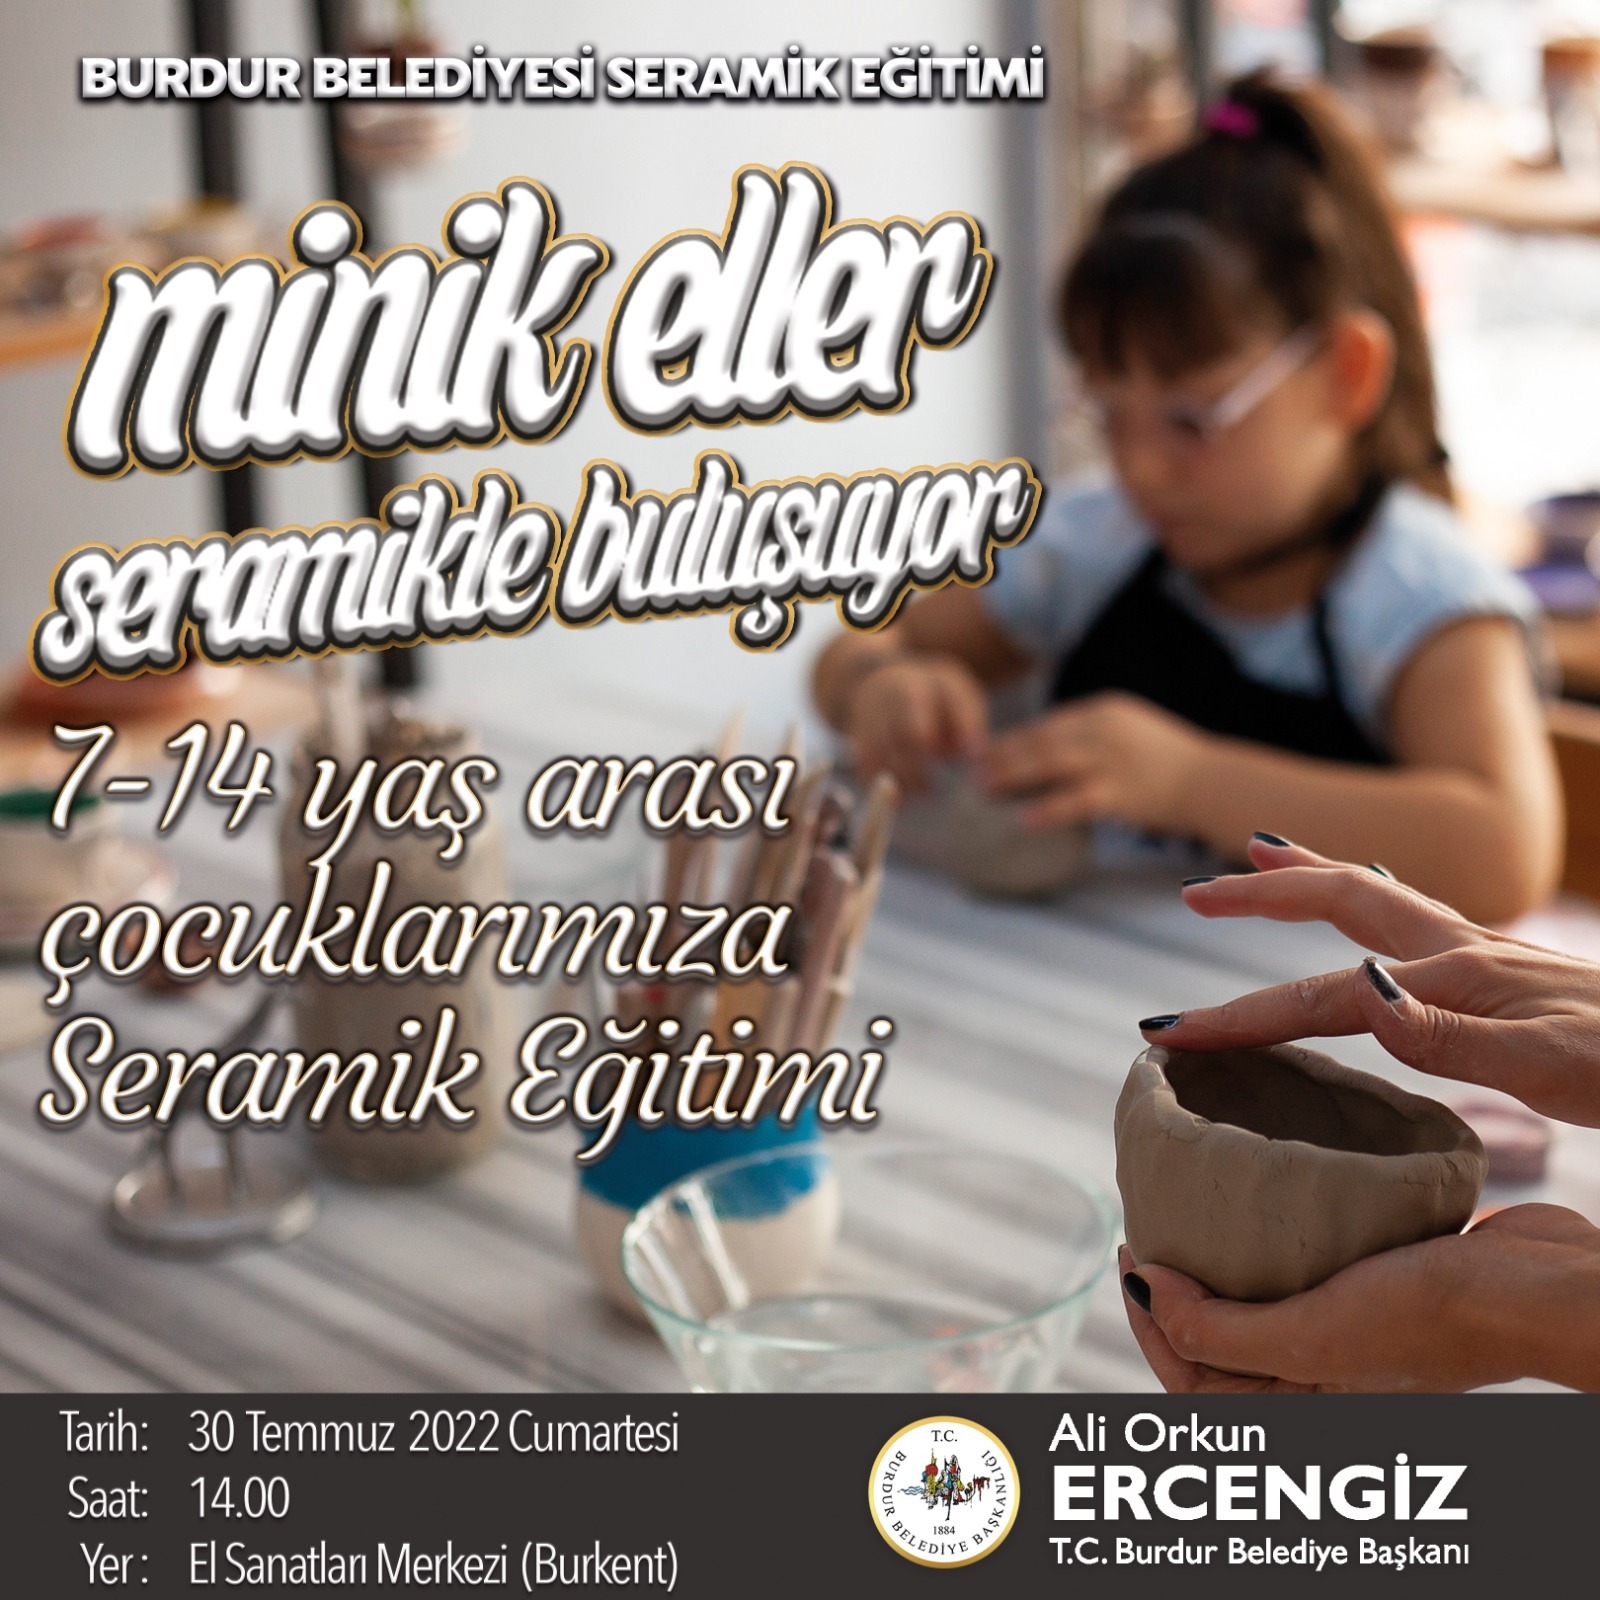 Burdur Belediyesi Seramik Sanat